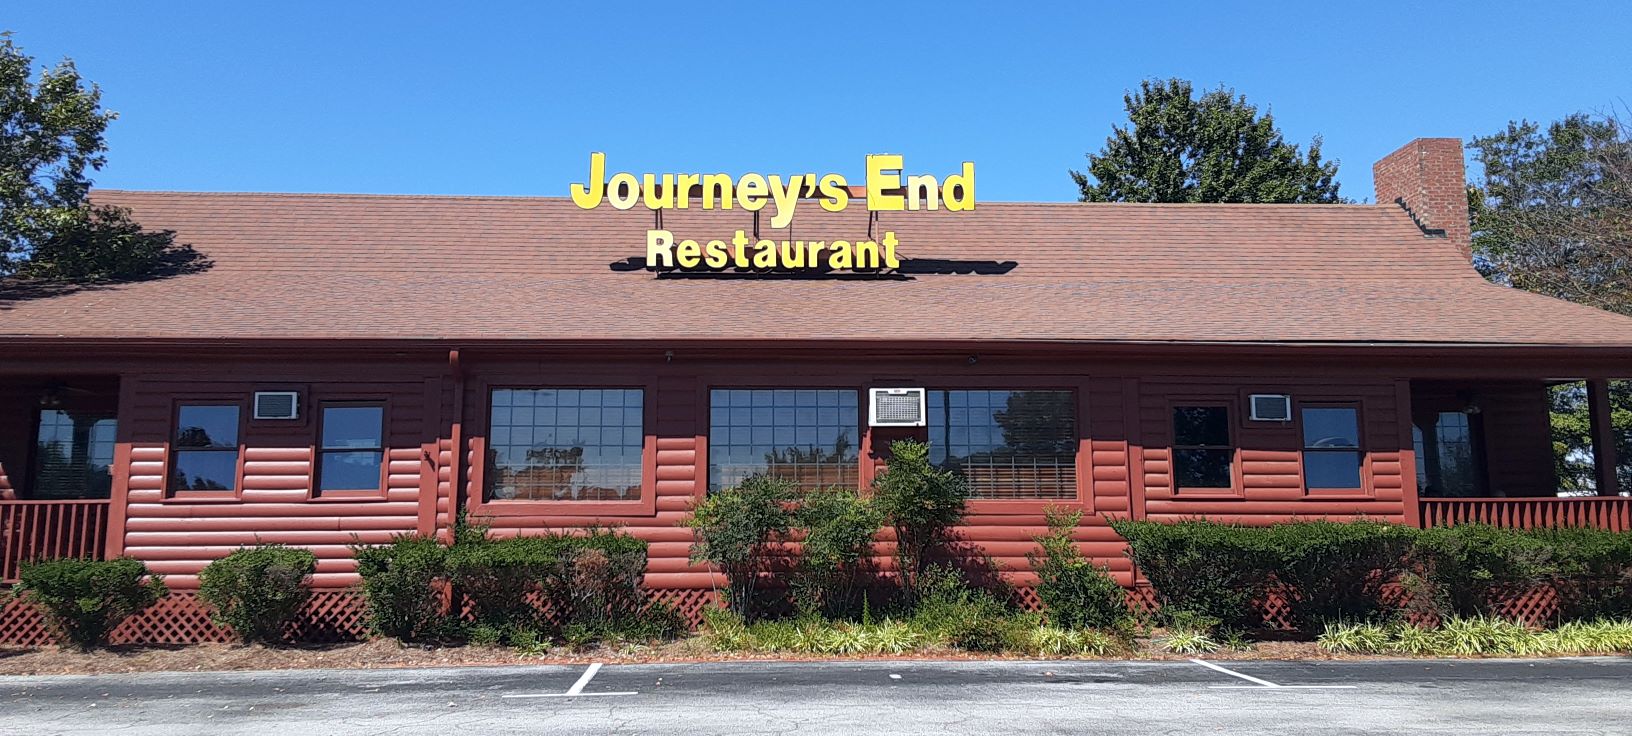 journeys restaurant near me